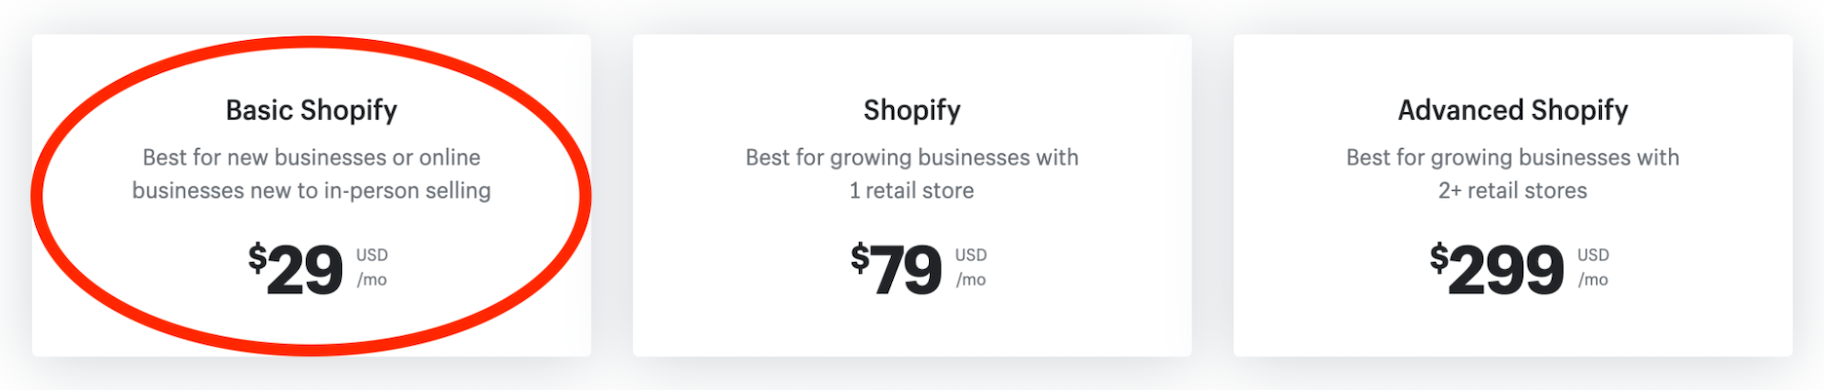 基本的Shopify定价